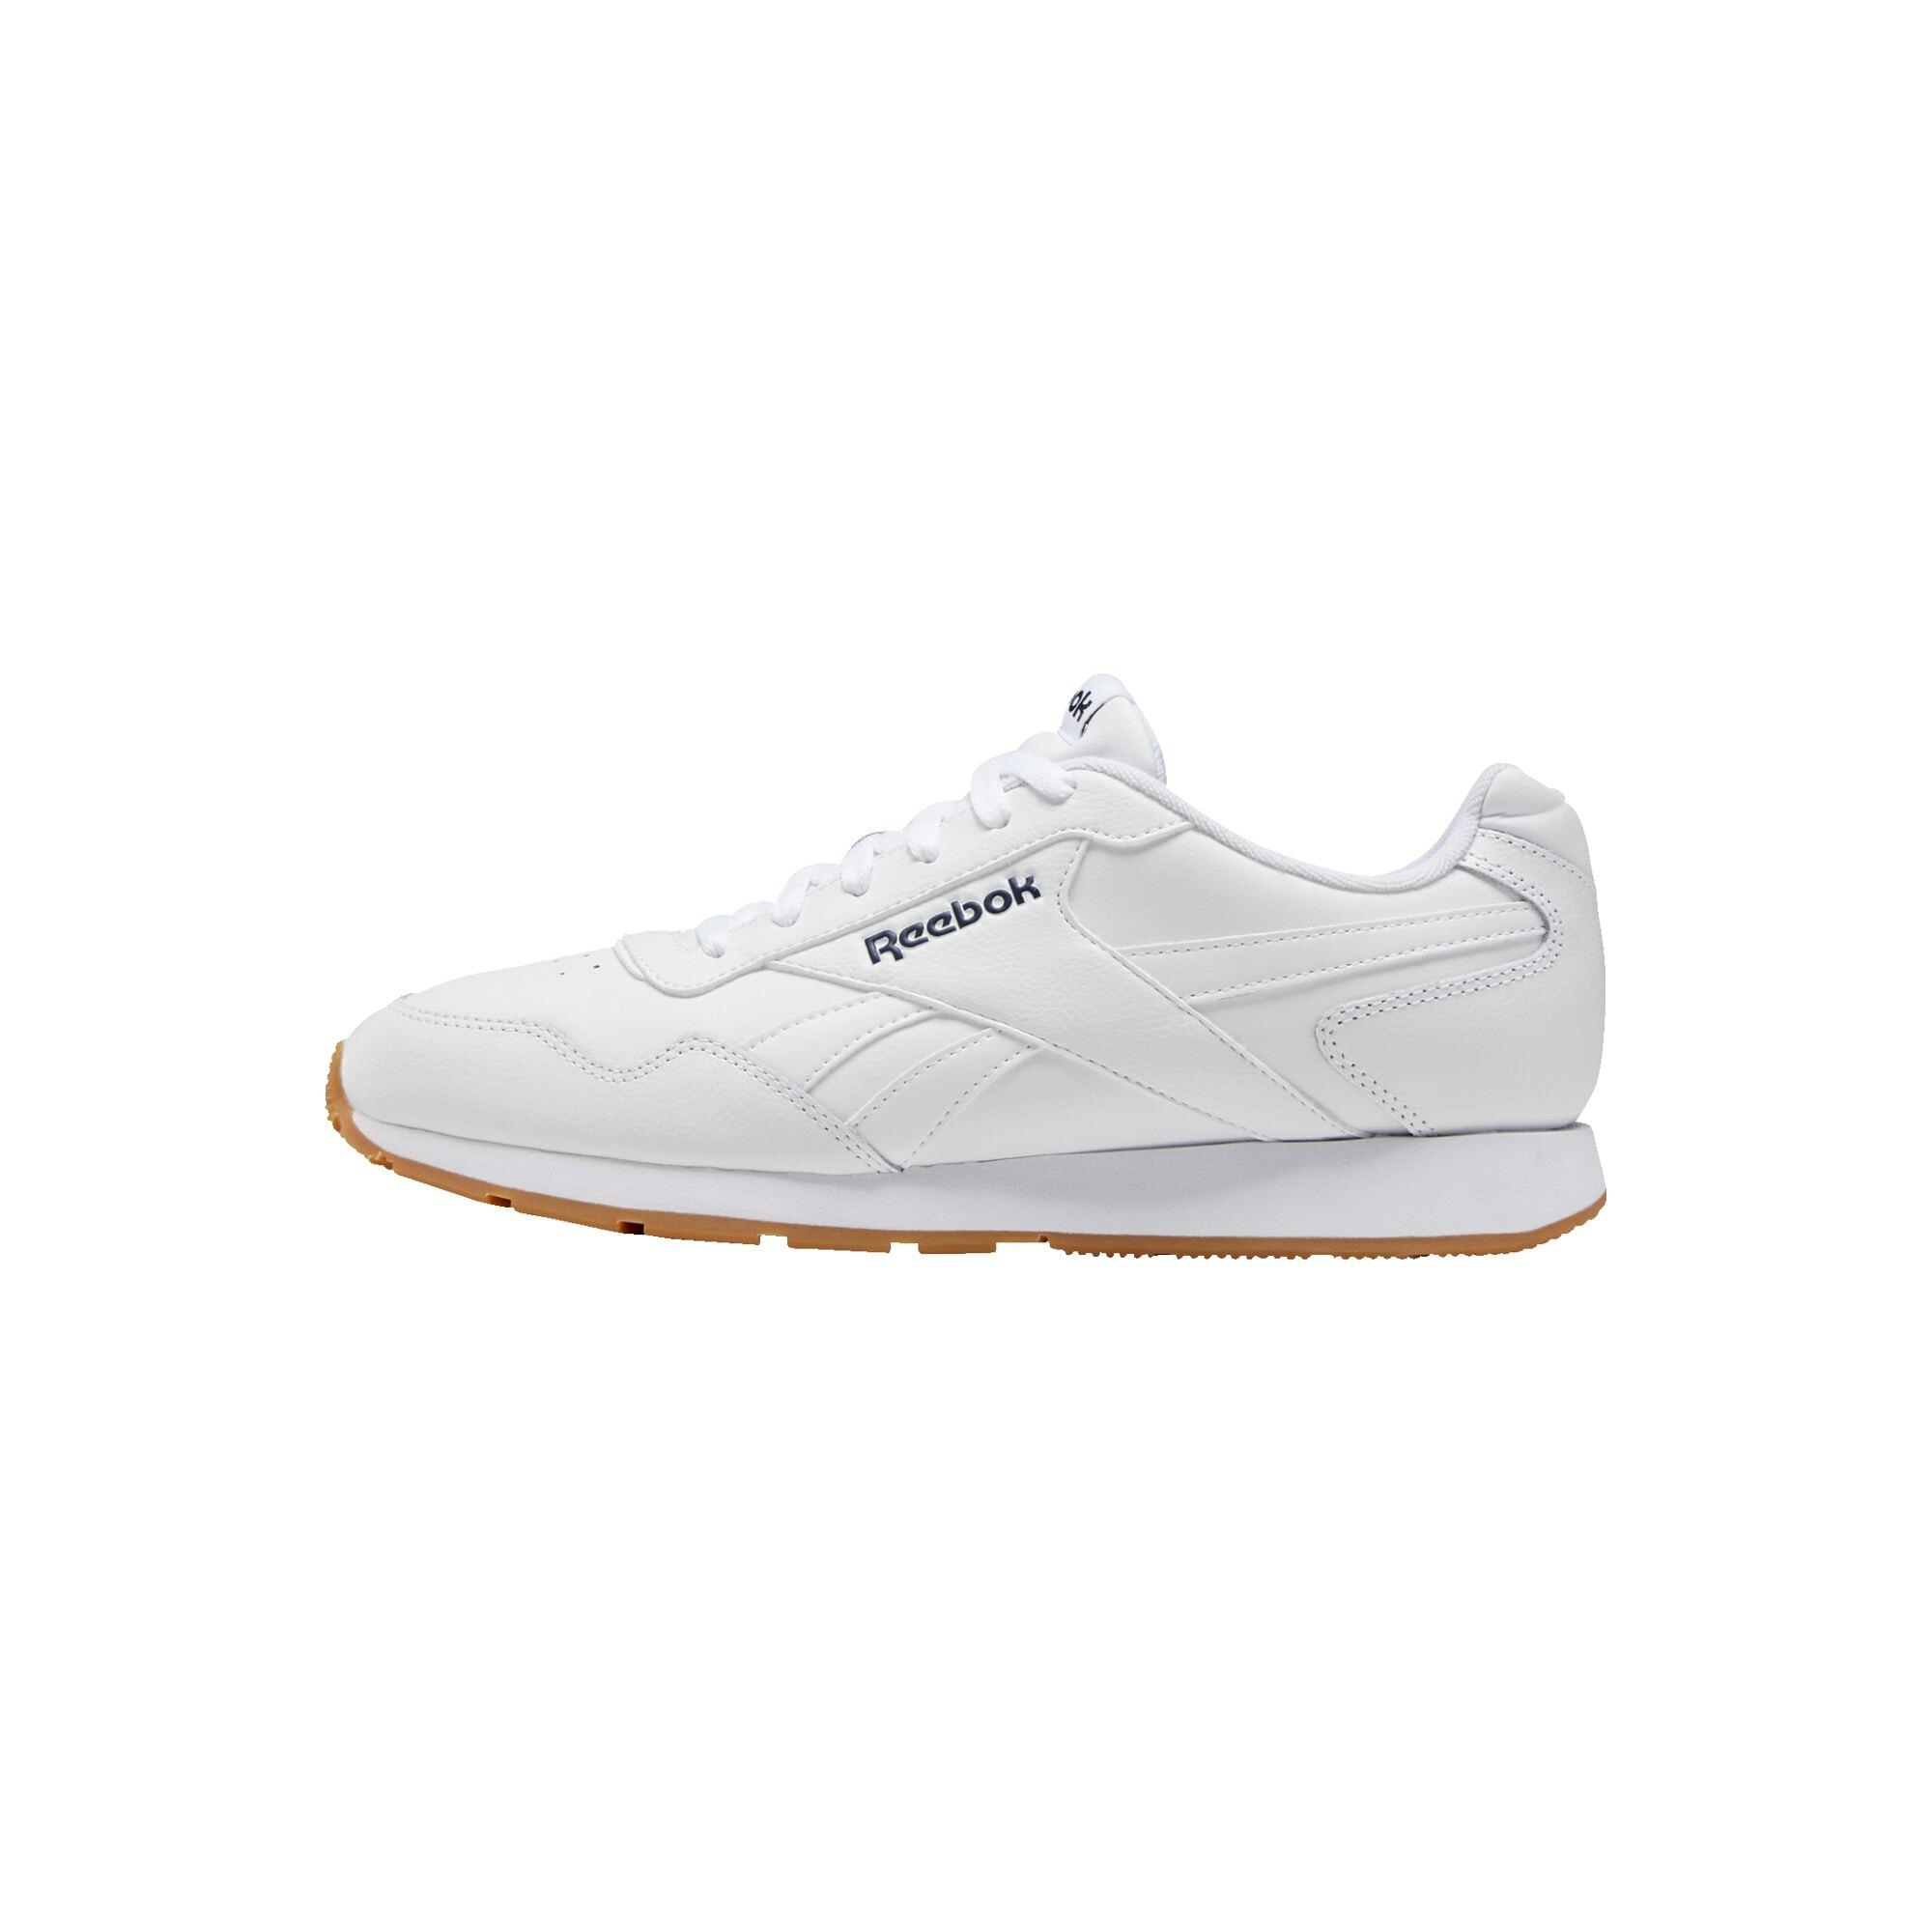 Reebok Reebok Royal Glide Sneaker Herren White / Collegiate Navy / Gum im  Online Shop von SportScheck kaufen